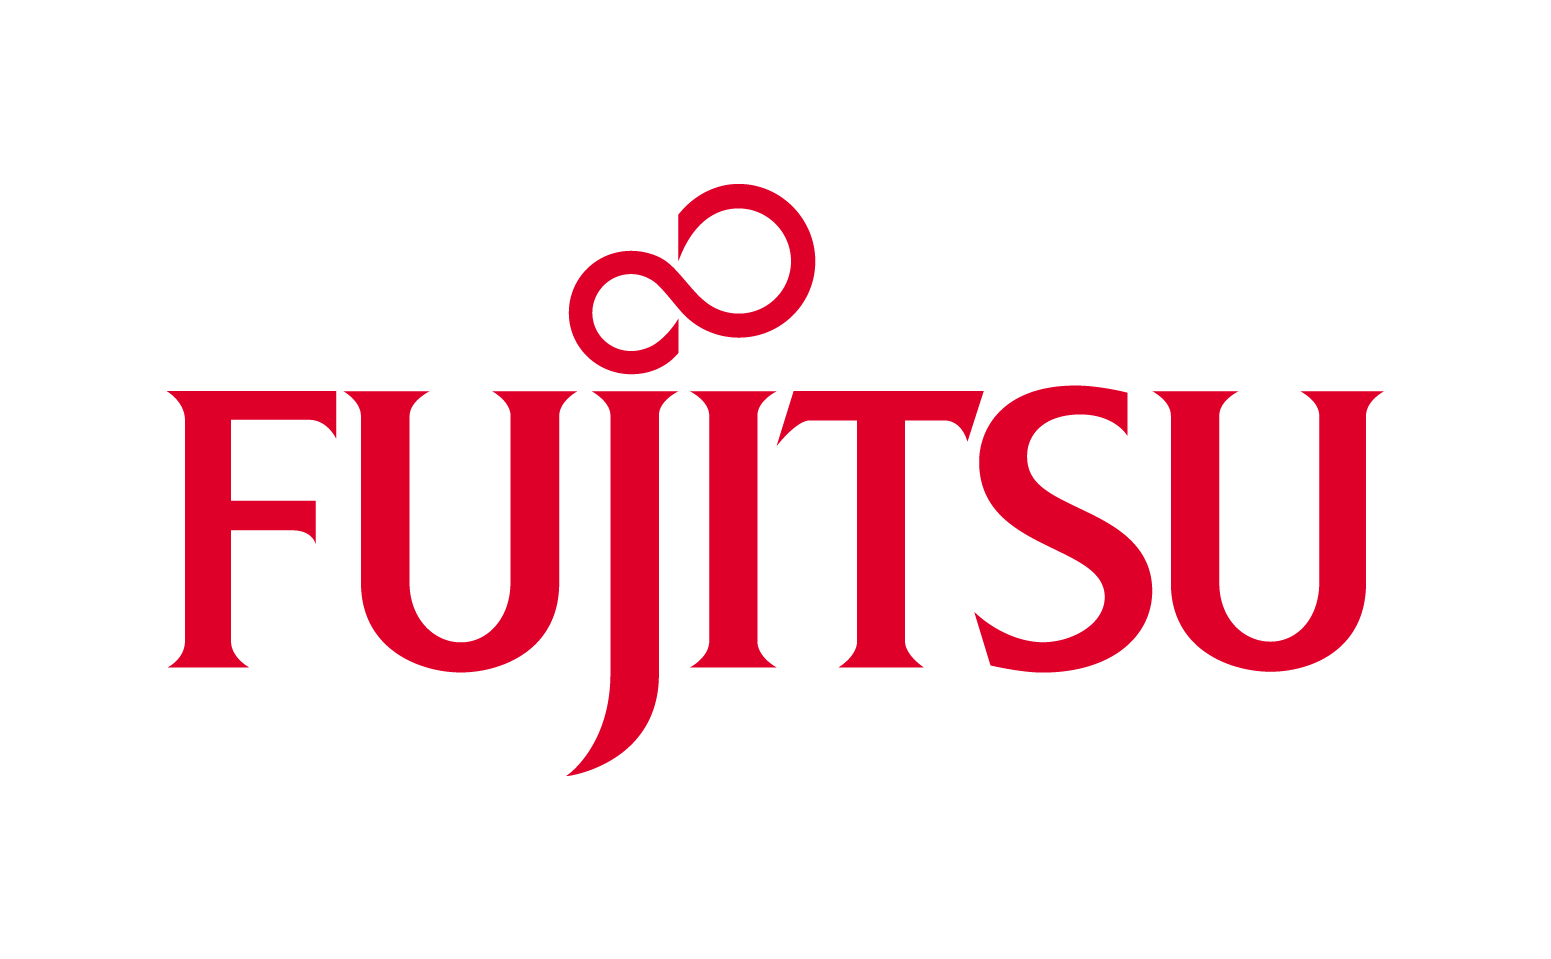 Кондиционеры Fujitsu